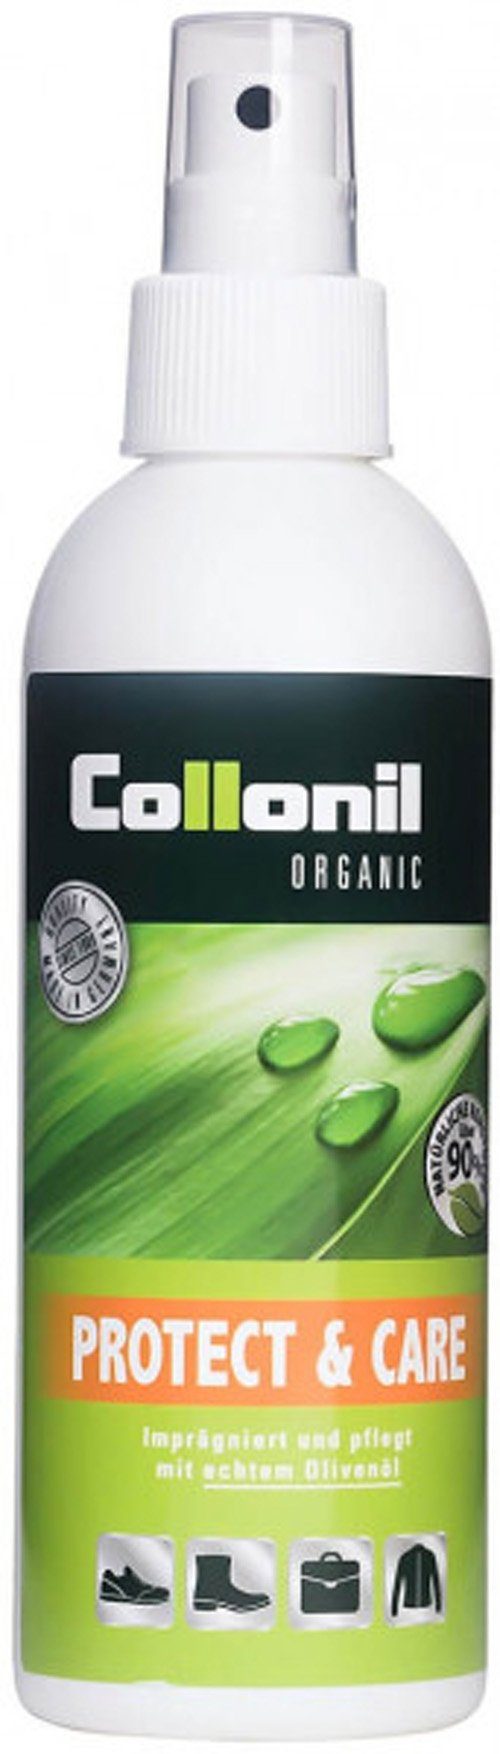 Collonil Schuhputzbürste Organic Protect & Care - für nachhaltigen Schutz und Pflege, (1-tlg)